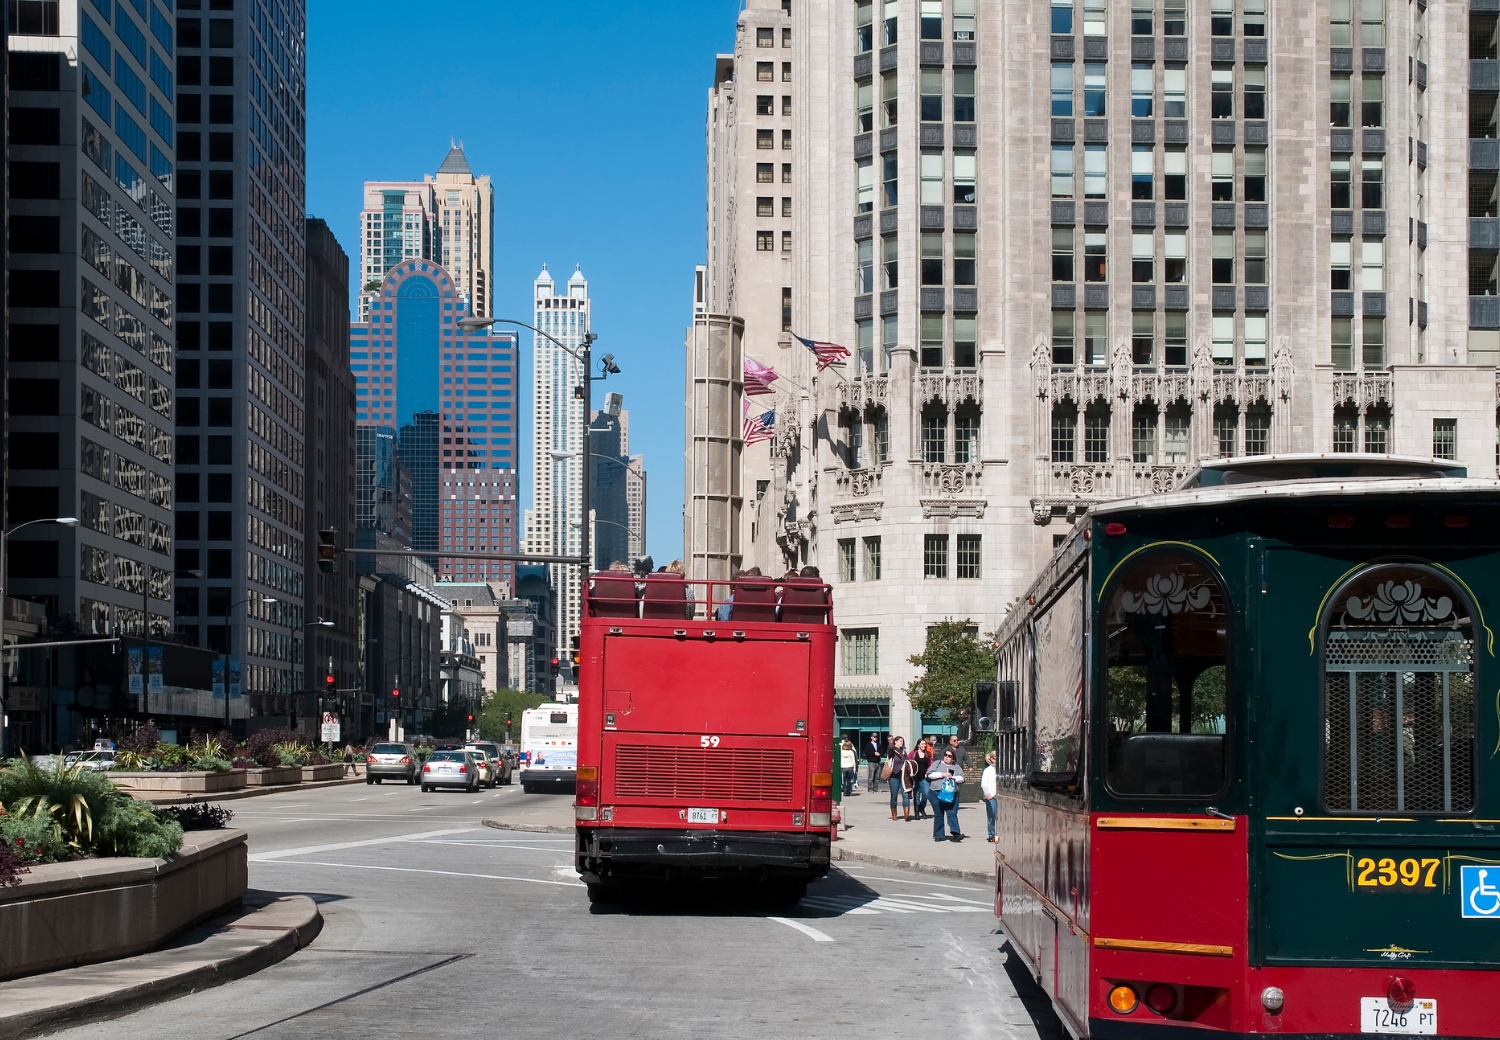 תחבורה ציבורית בשיקגו - אוטובוסים